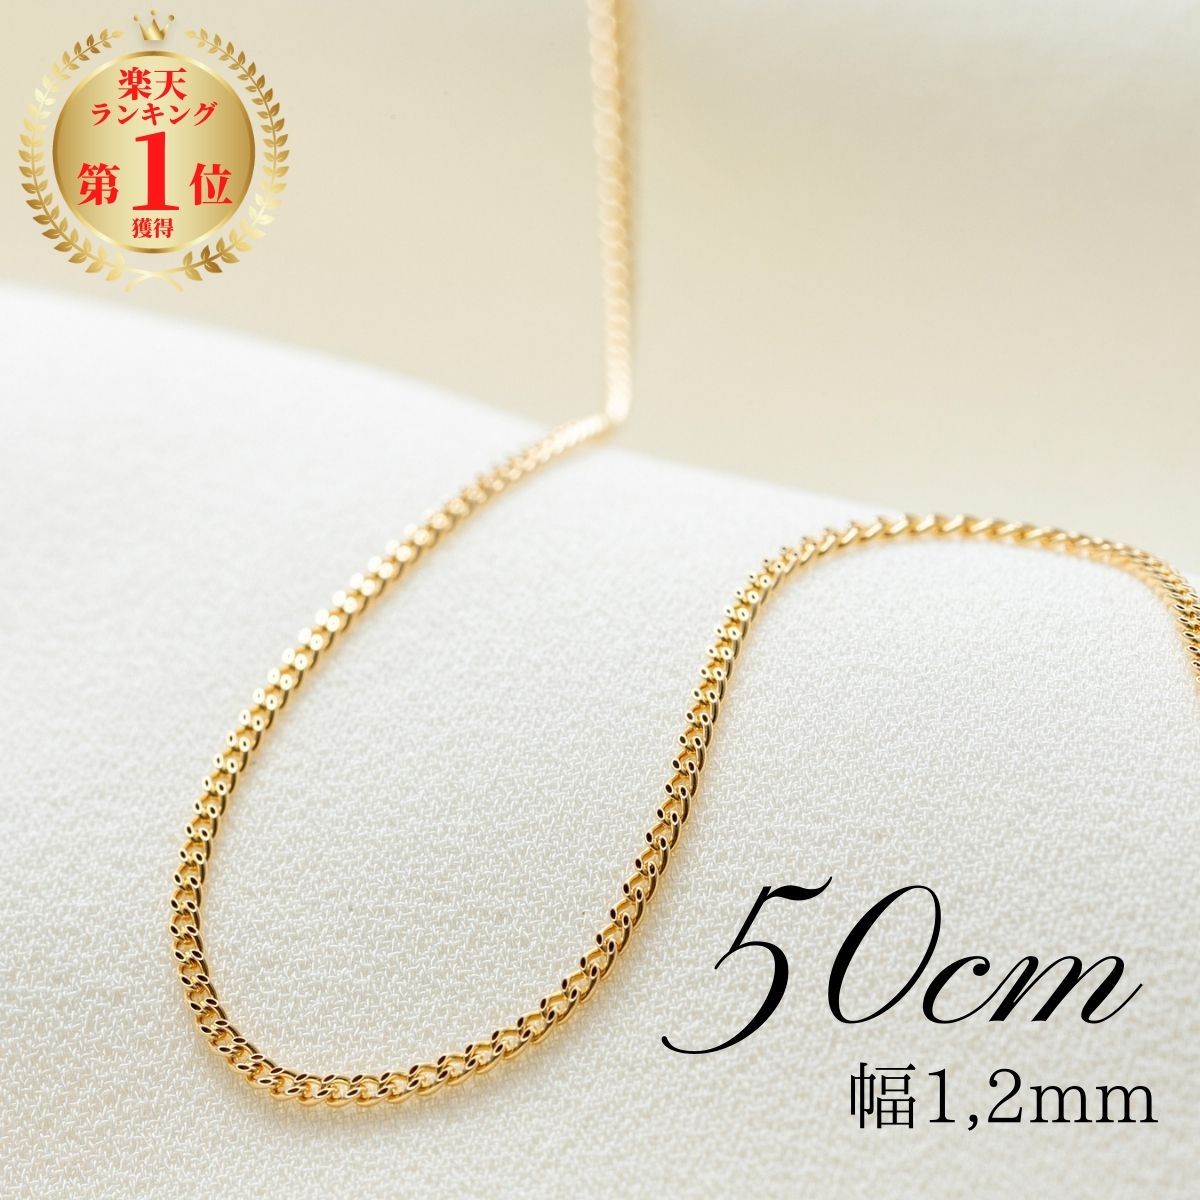 激安商品セール 《最高品質/日本製18金》喜平ネックレスチェーン/50cm/K18WG ネックレス